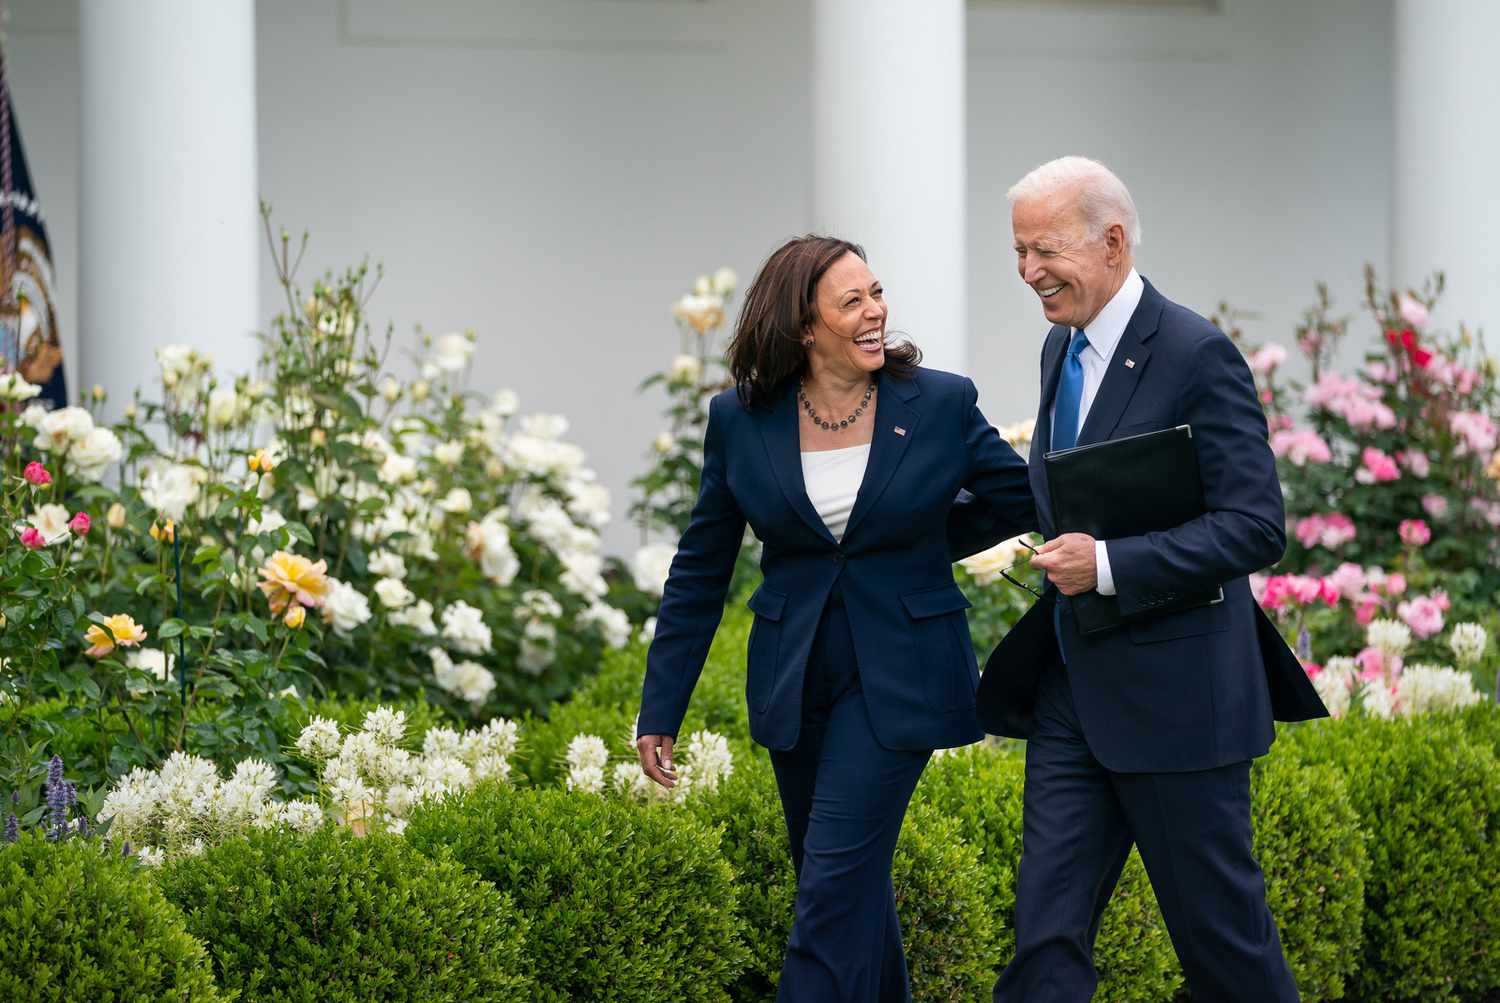 Joe Biden Drops Out of 2024 Presidential Election, Endorses Kamala Harris [Video]